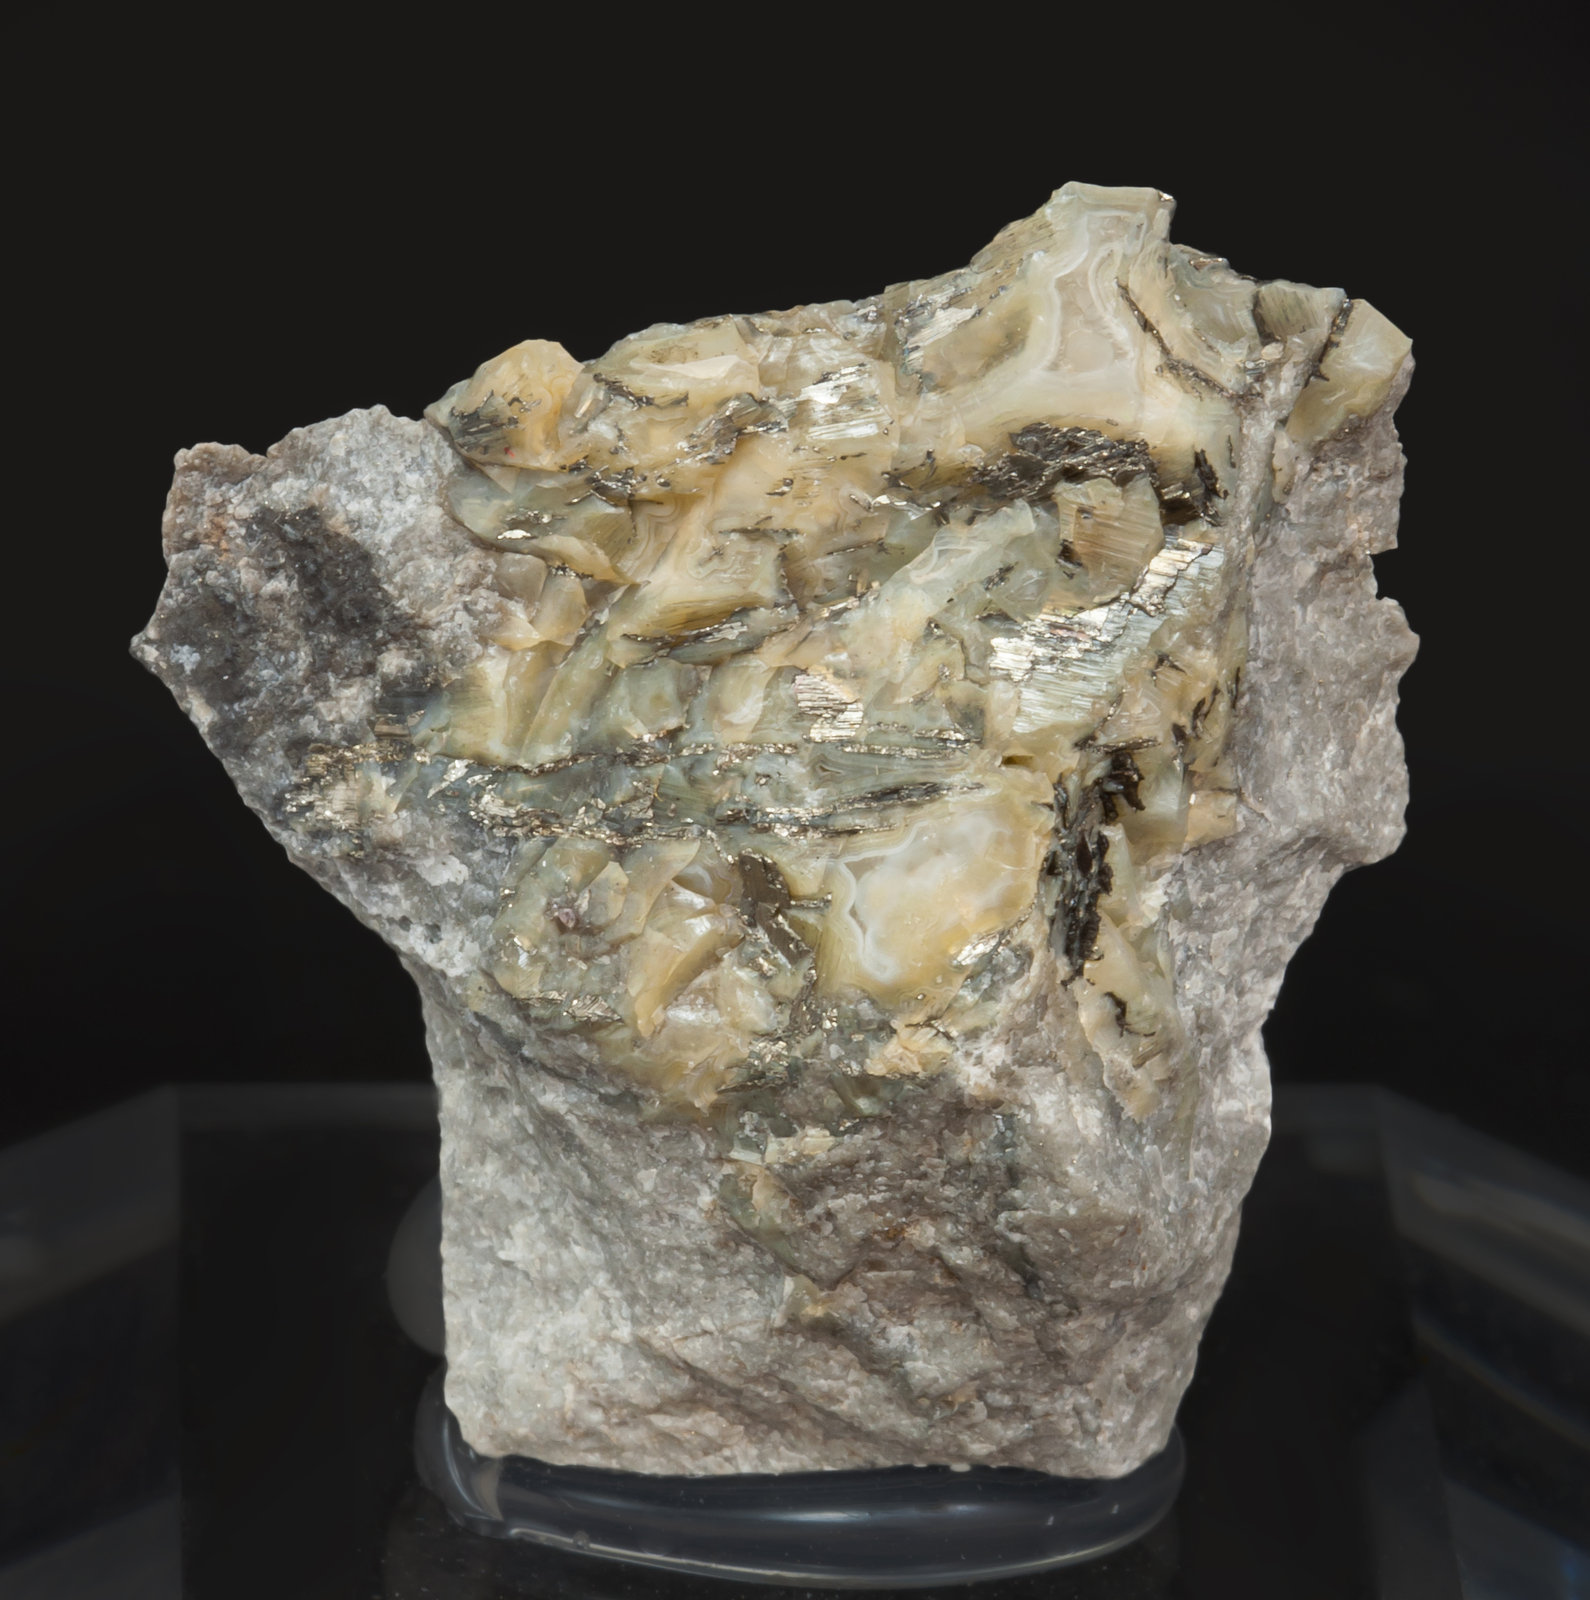 specimens/s_imagesAI8/Calaverite-TM56AI8f.jpg